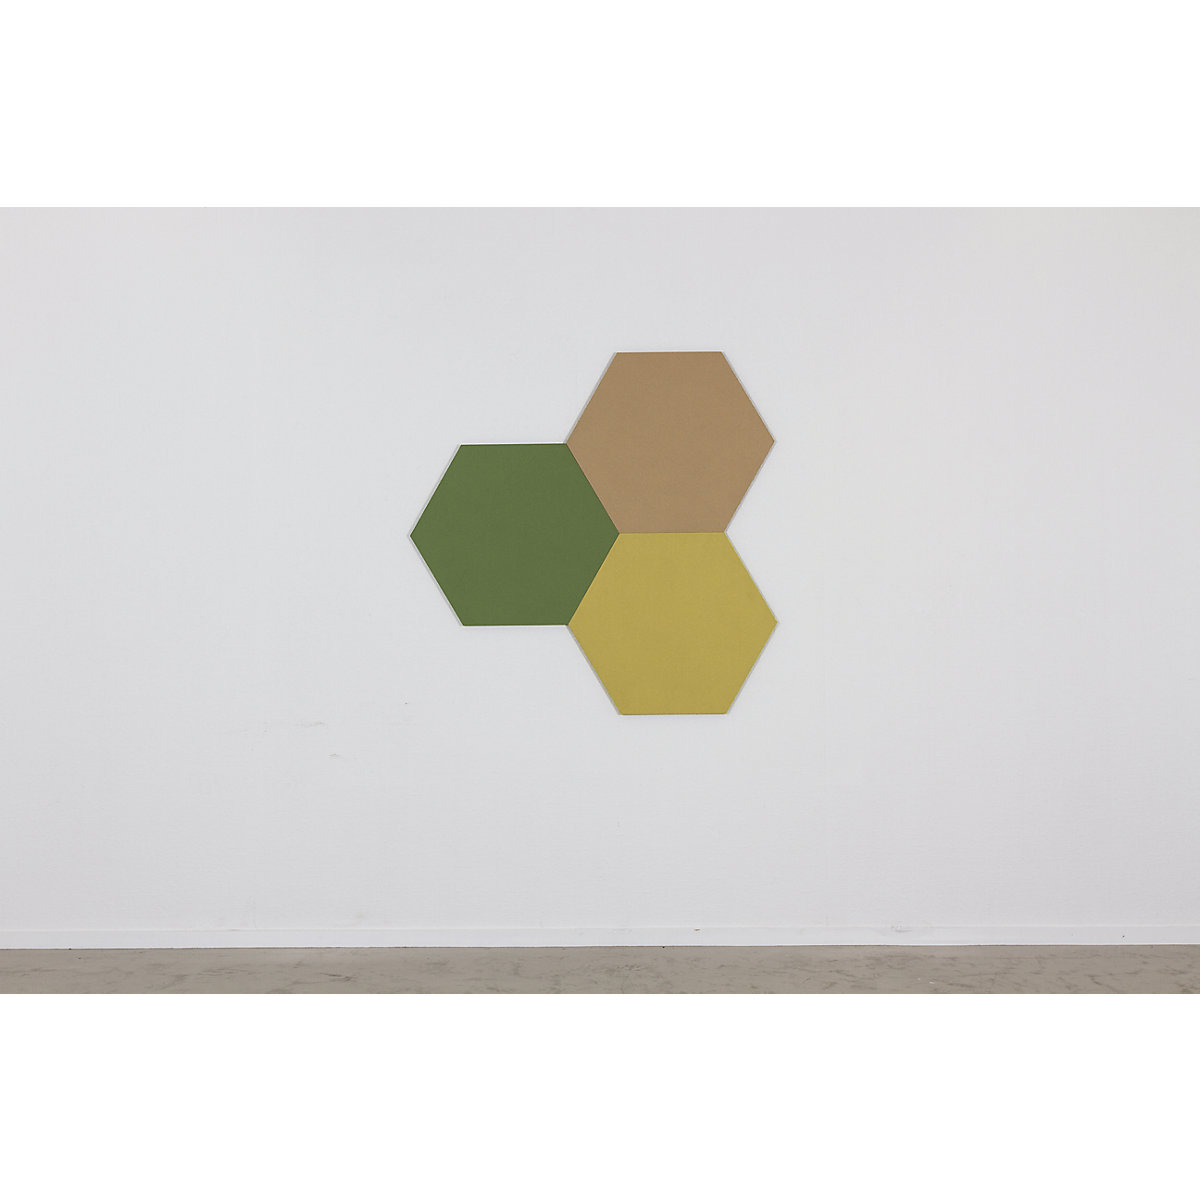 Hexagonal designer pin board – Chameleon (Product illustration 18)-17